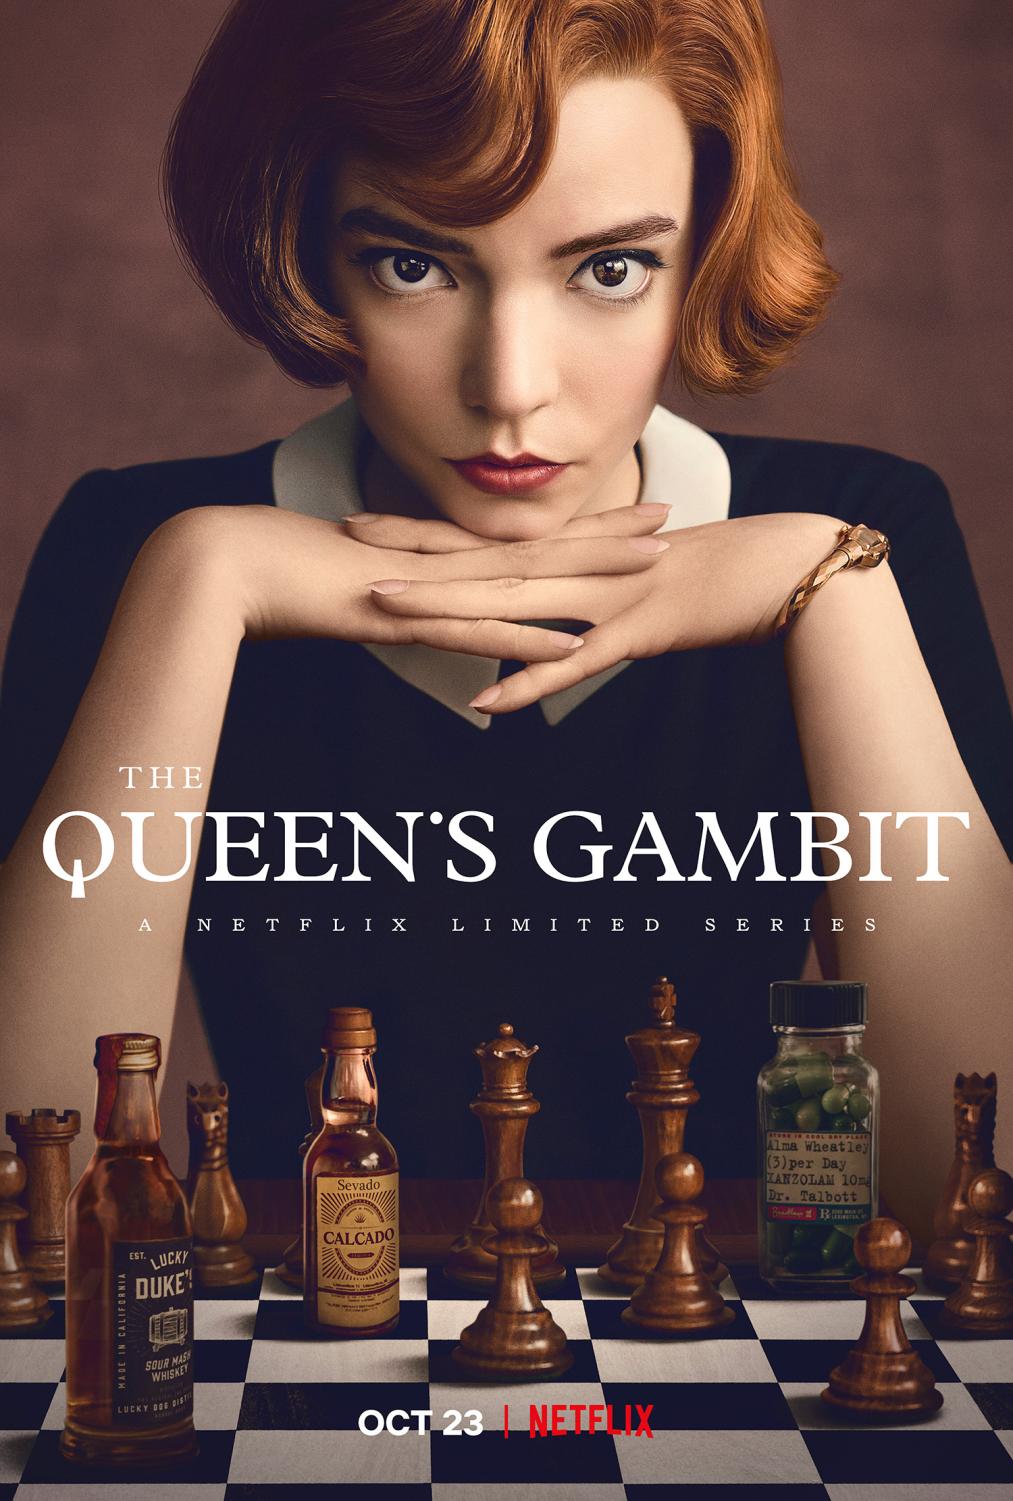 edit beth harmon  The queen's gambit netflix, The queen's gambit,  Instagram photo ideas posts